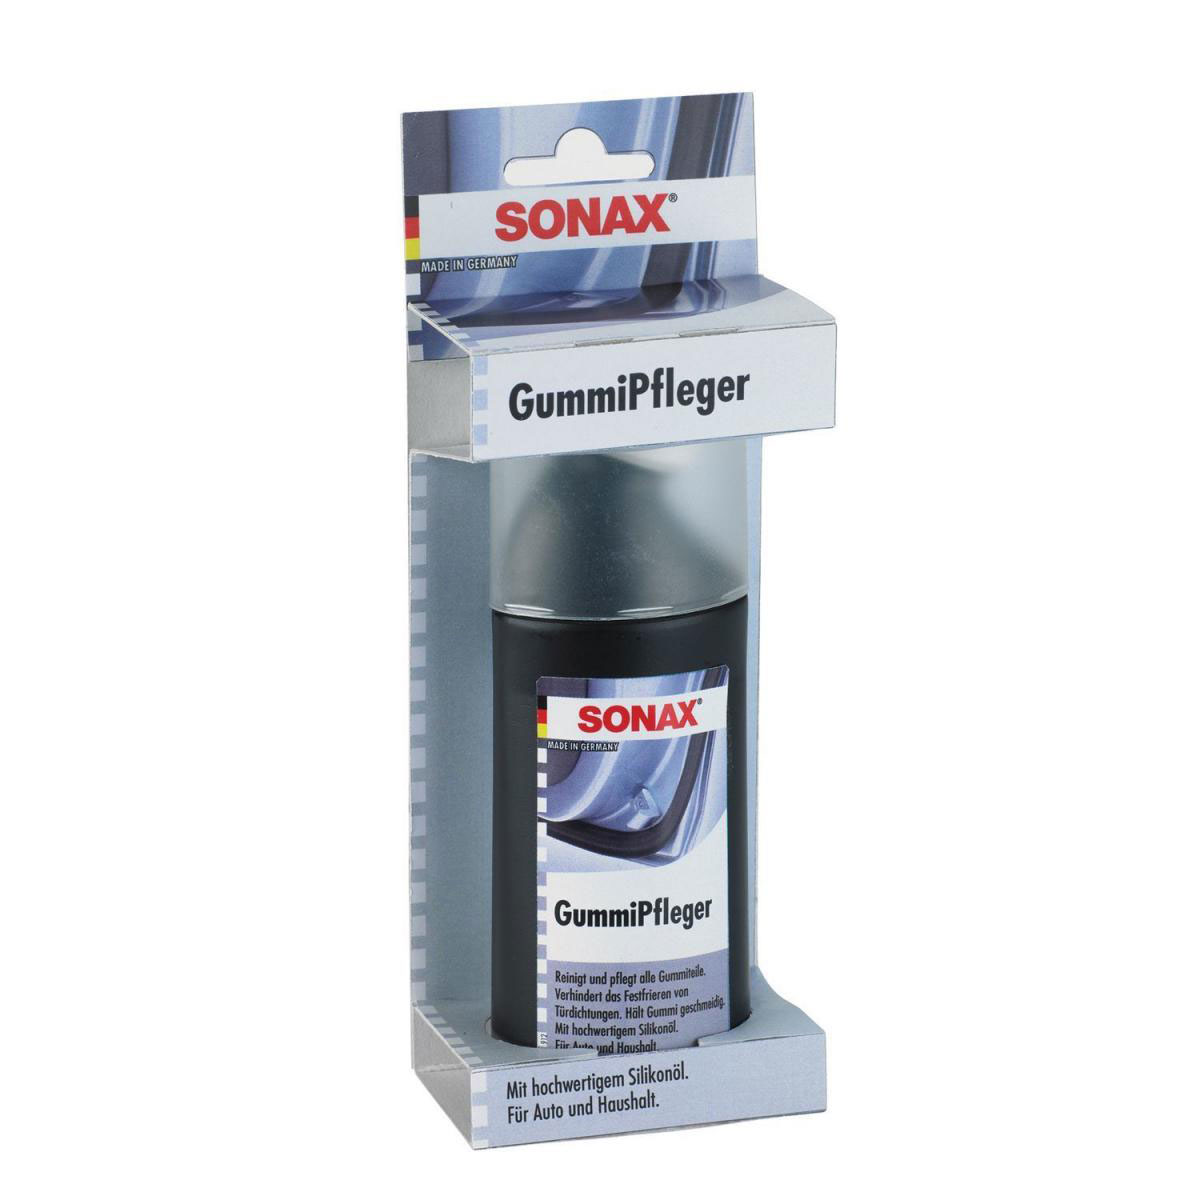 Sonax Gummi Pflege Stift 18g 499000, 5,00 €